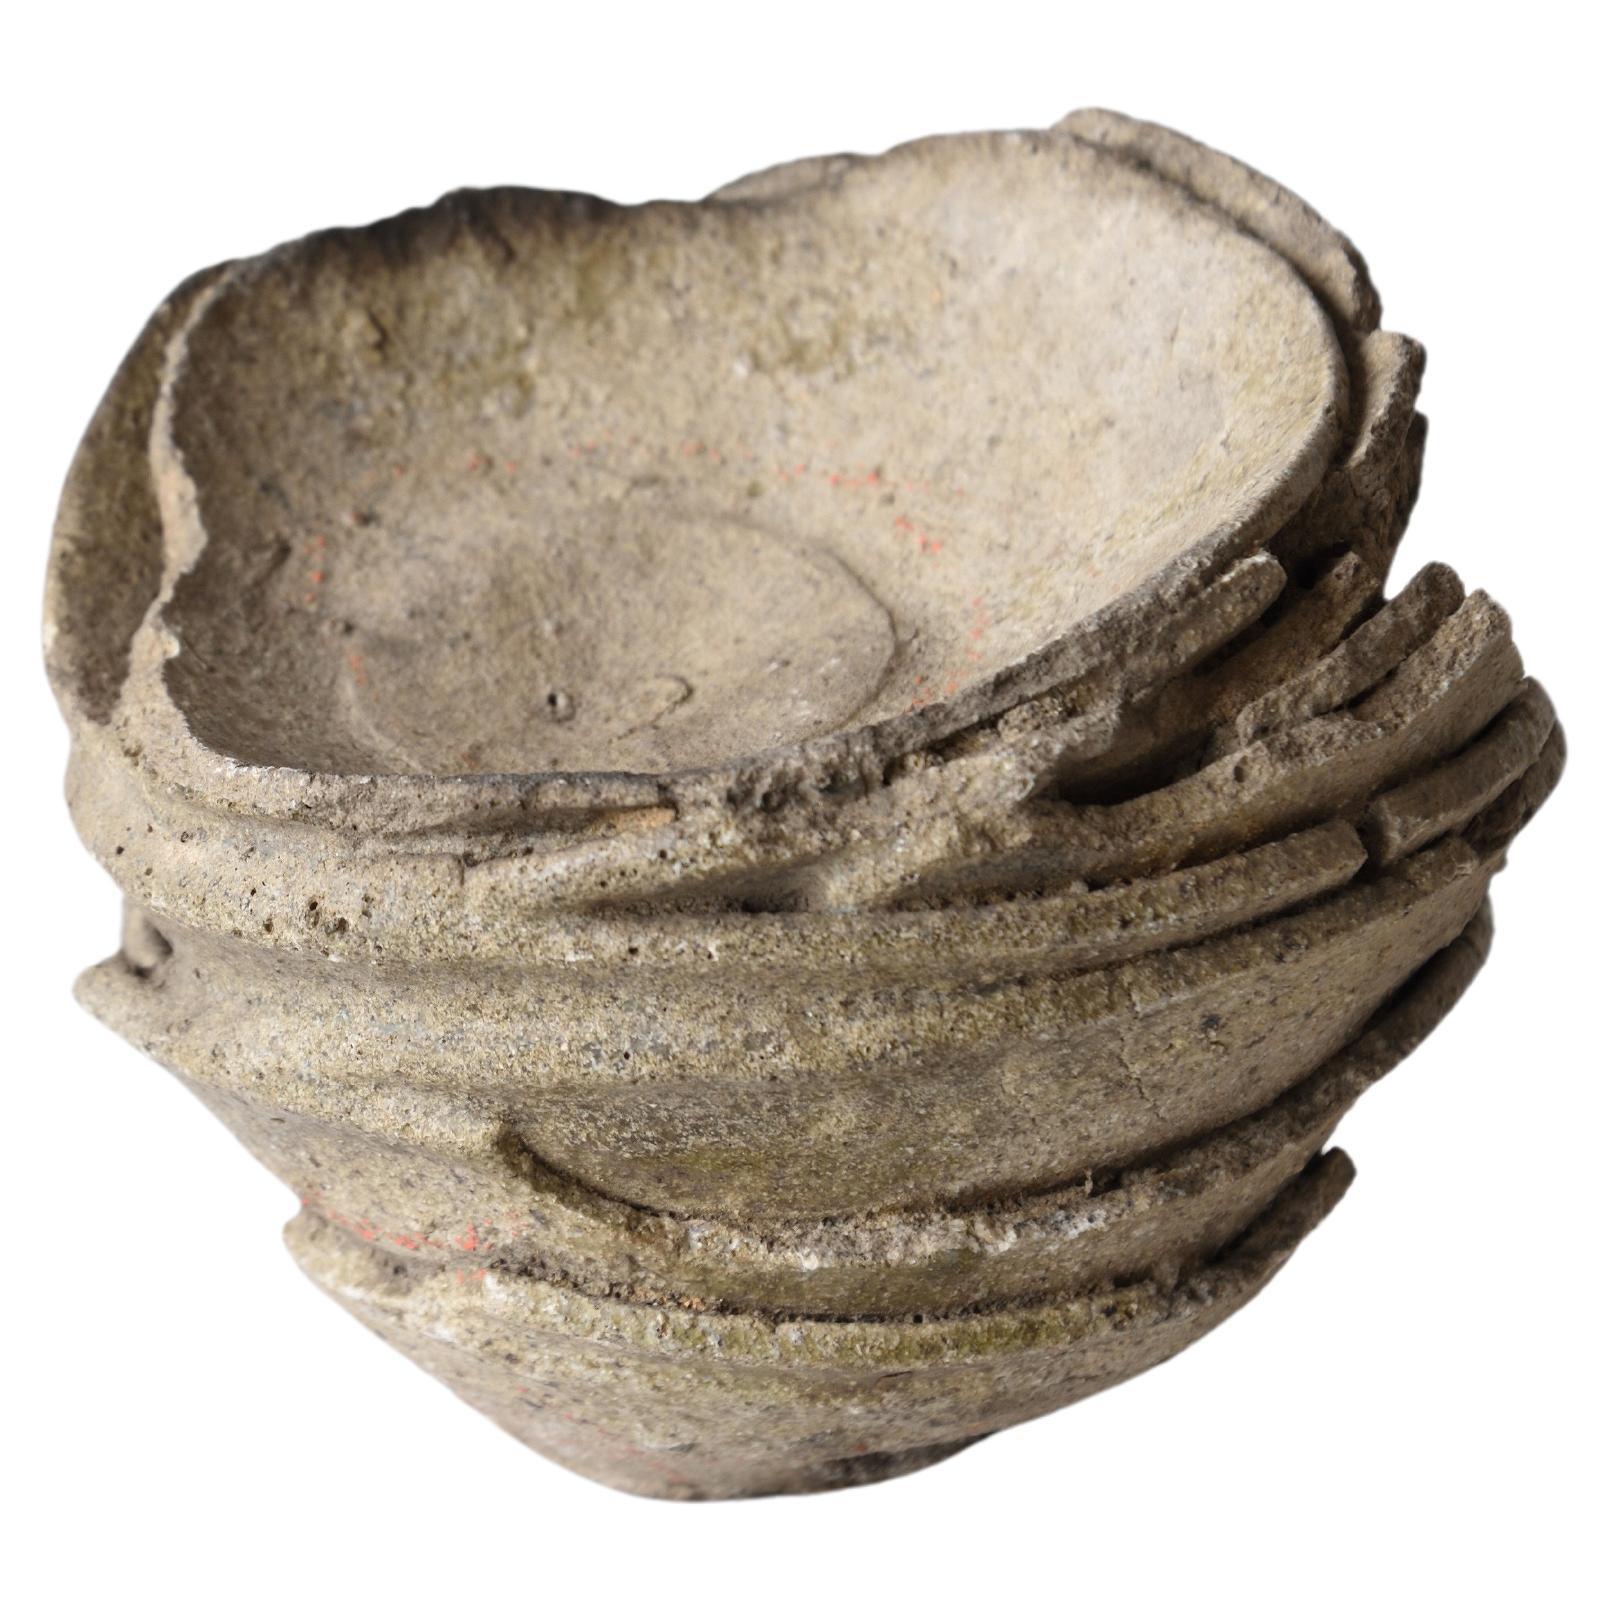 12-16th century Yamajawan 8-layered Japanese proto-pottery mountain bowls